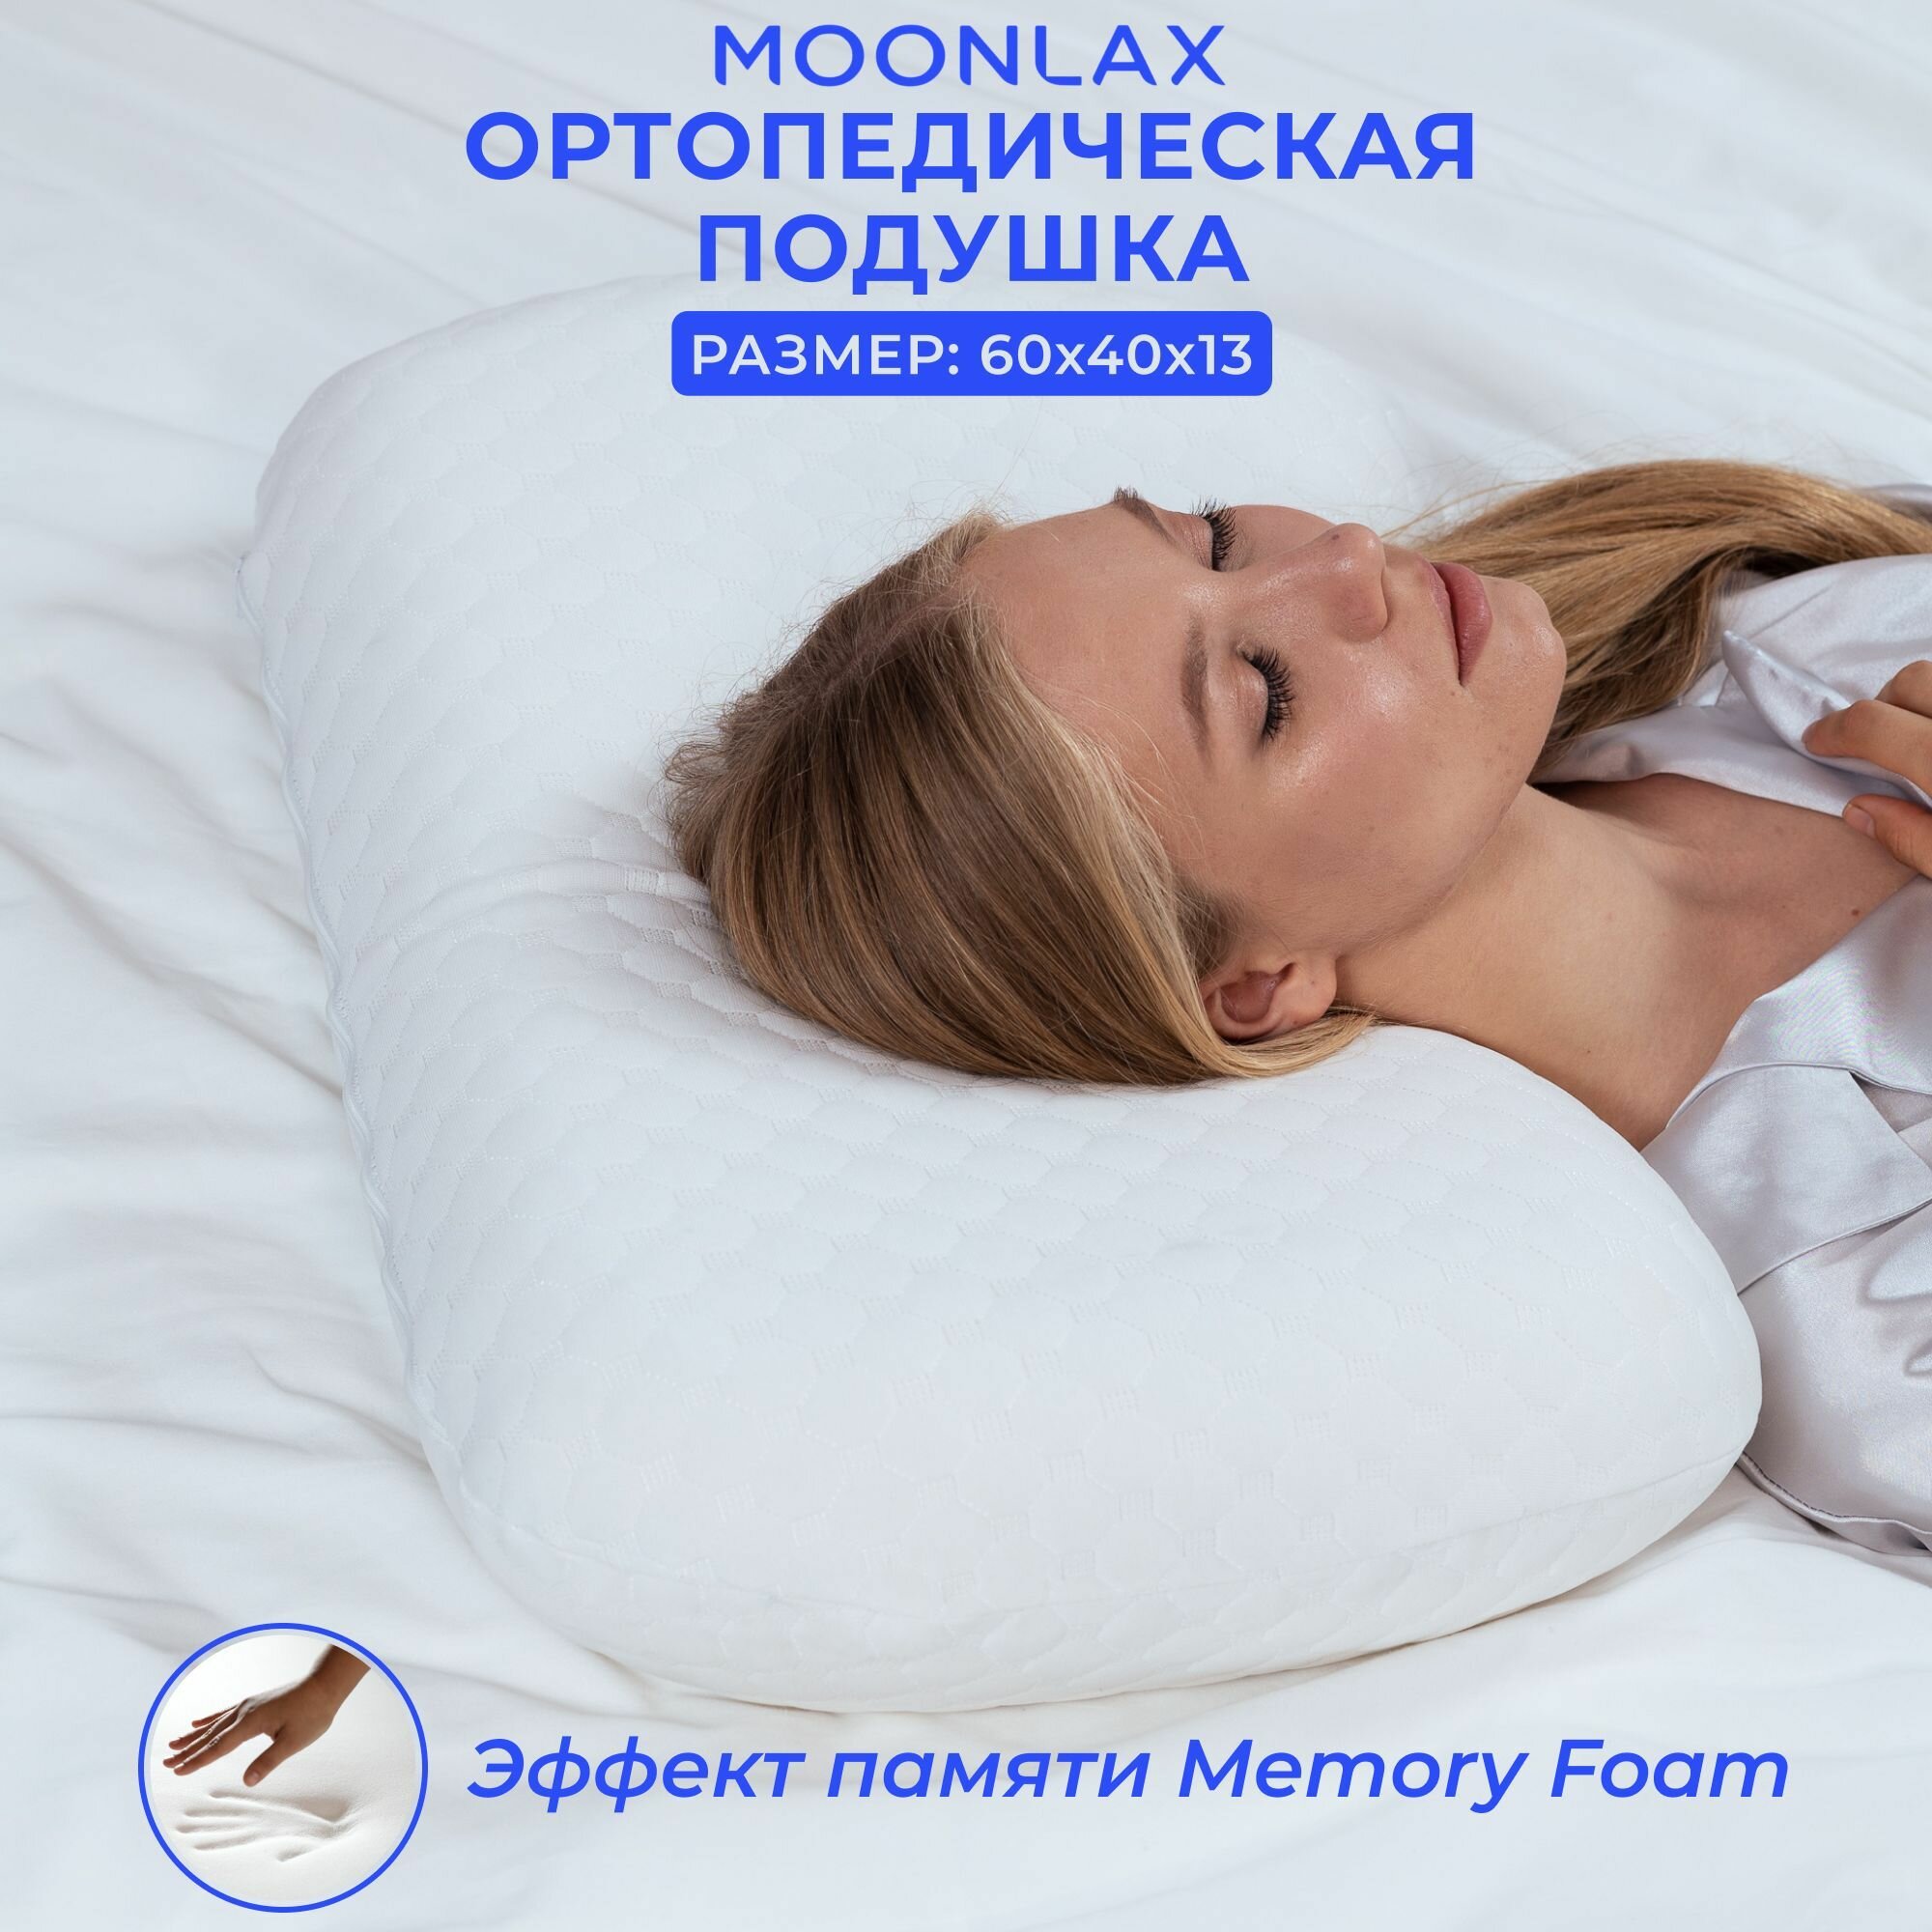 Подушка ортопедическая для сна 60x40x13 см, анатомическая с эффектом памяти Memory Foam